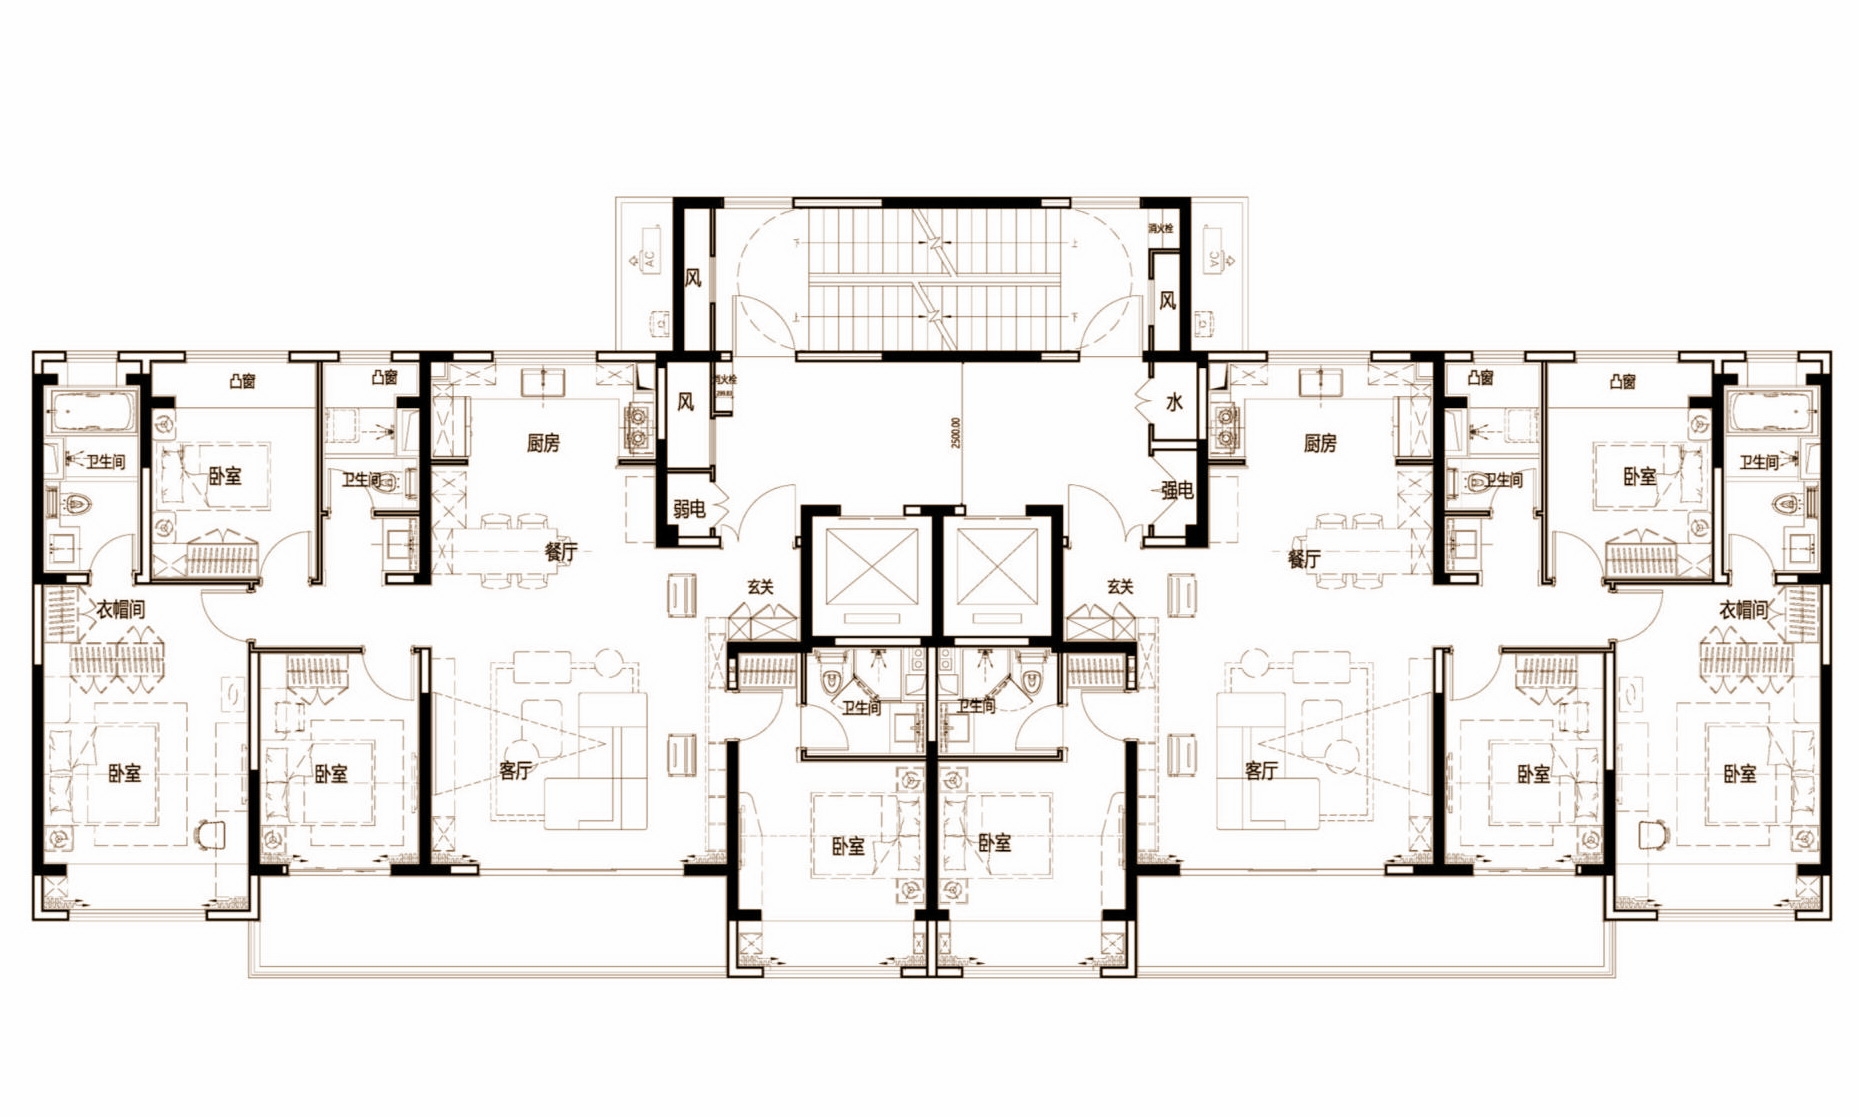 苏地2021-WG-22号地块项目 住宅#34标准层户型设计